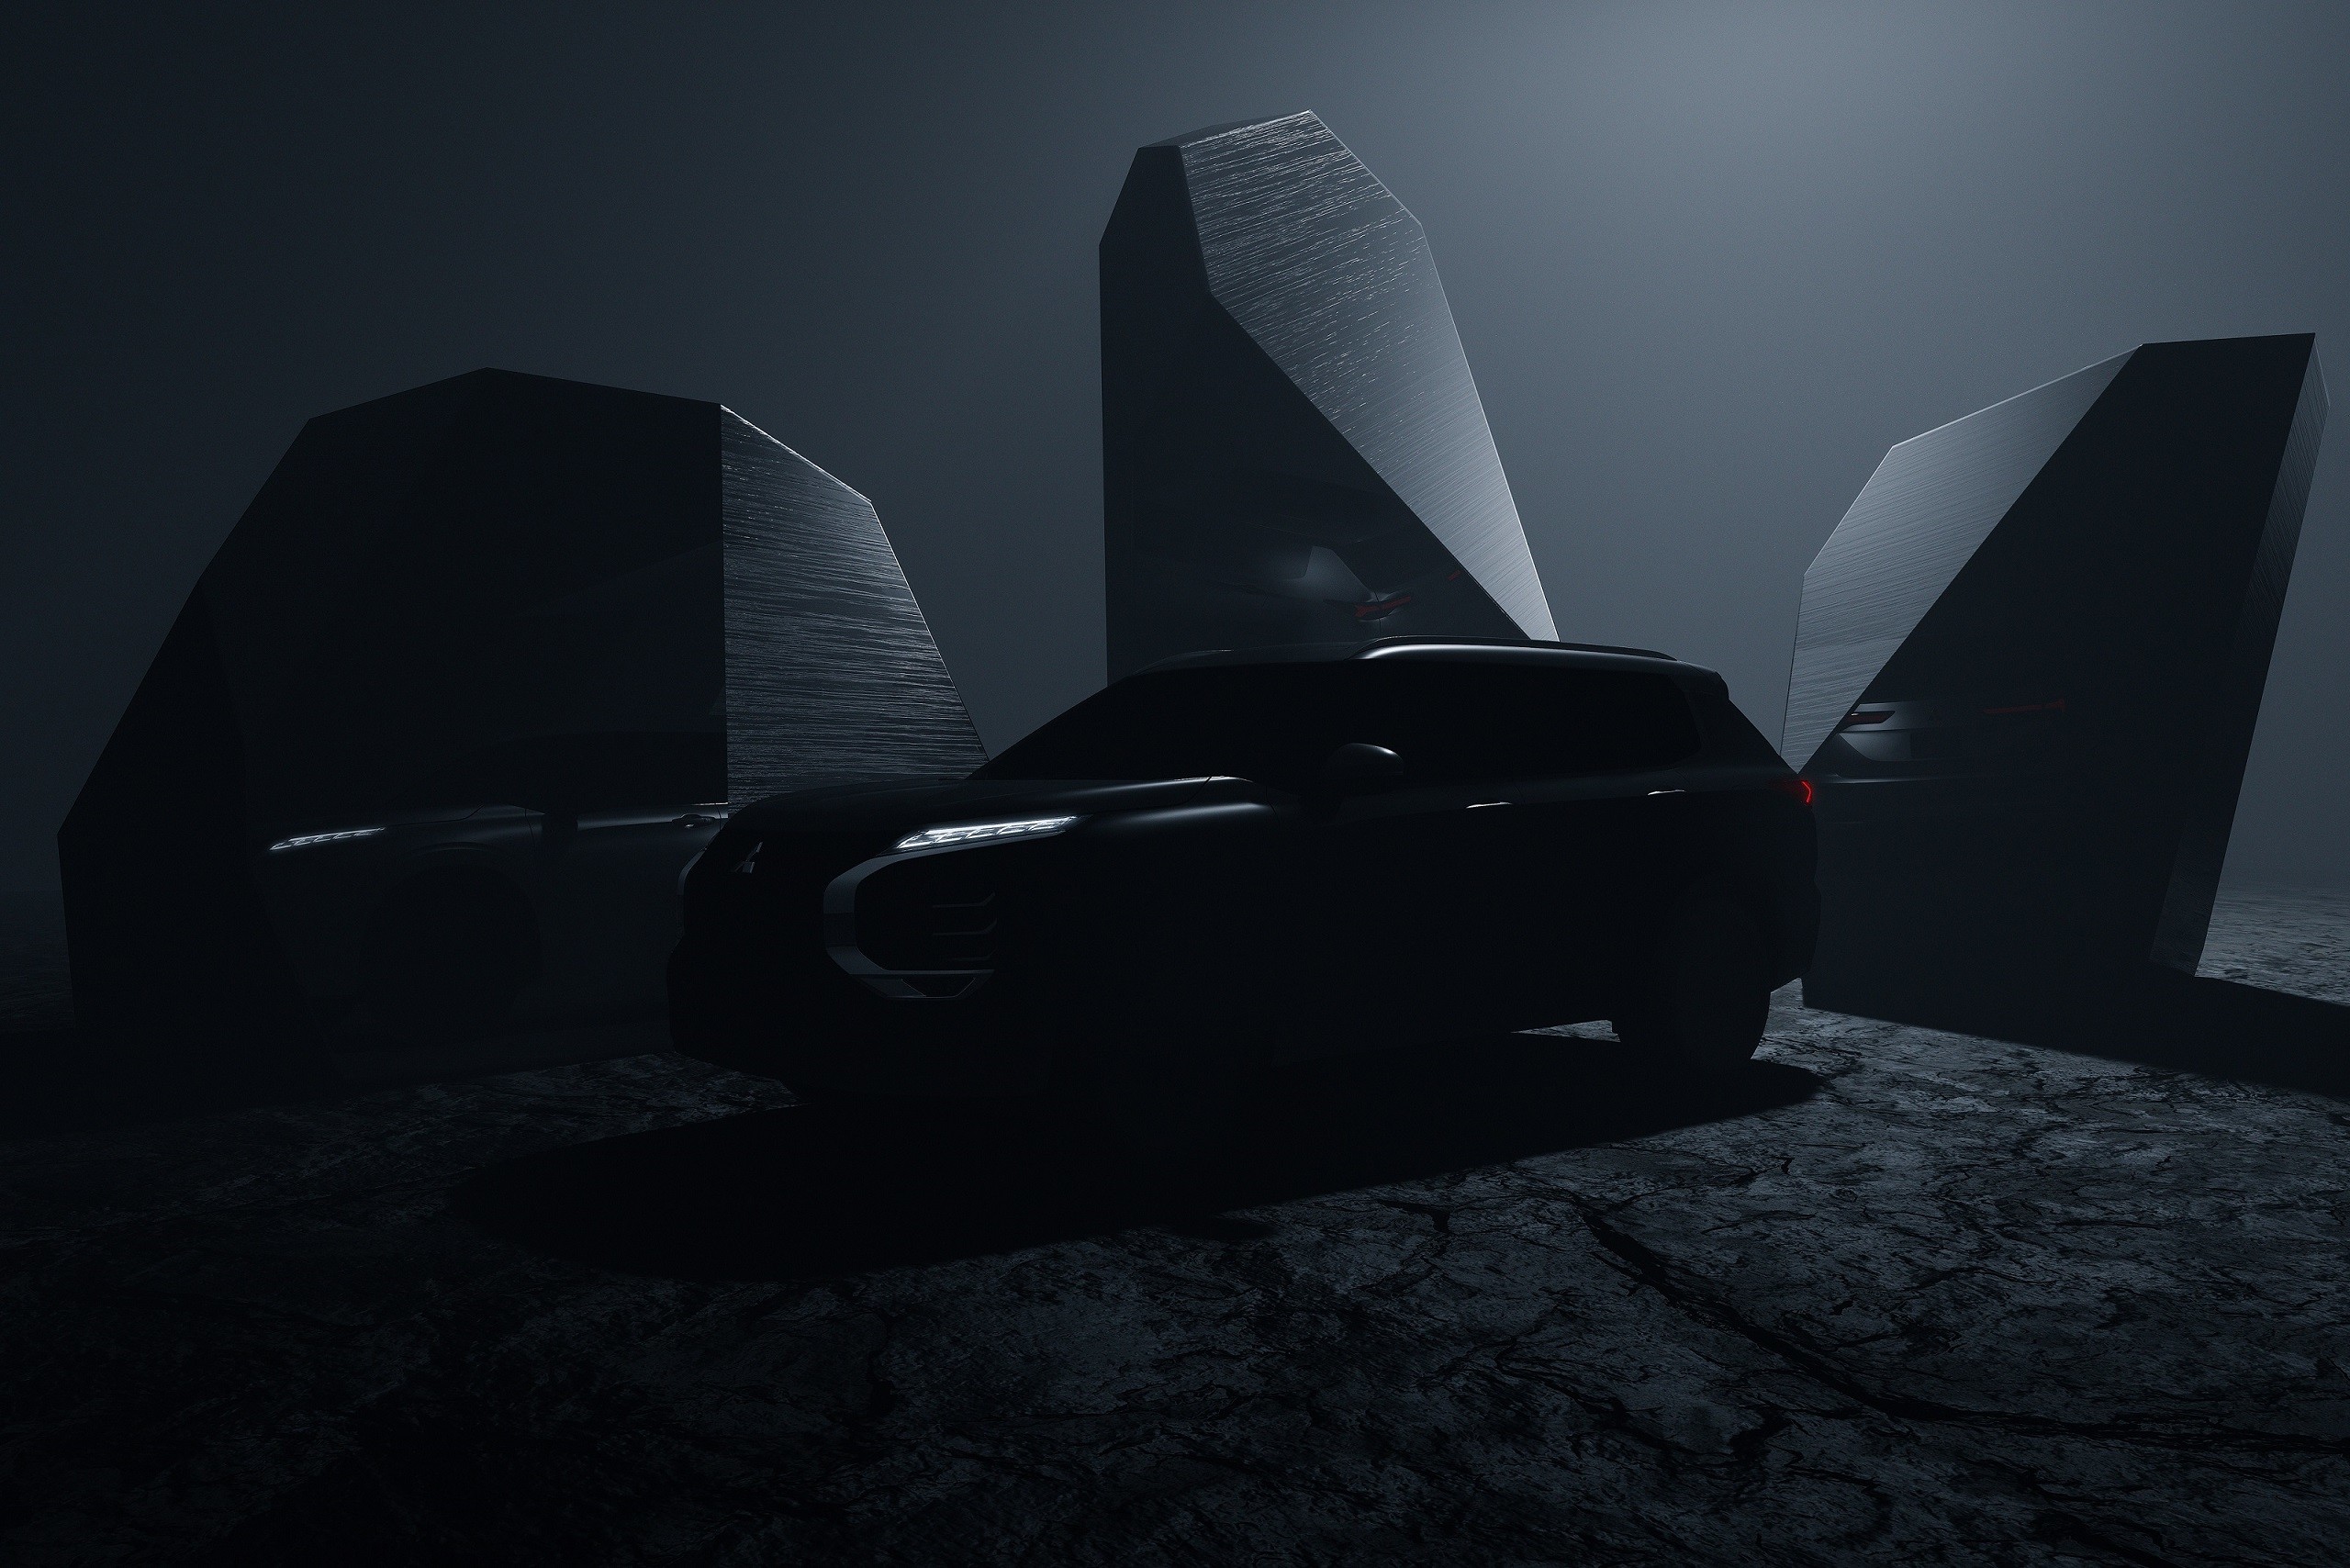 zagruzhennoe 1apvpv - Mitsubishi Outlander 2021: Презентация уже скоро